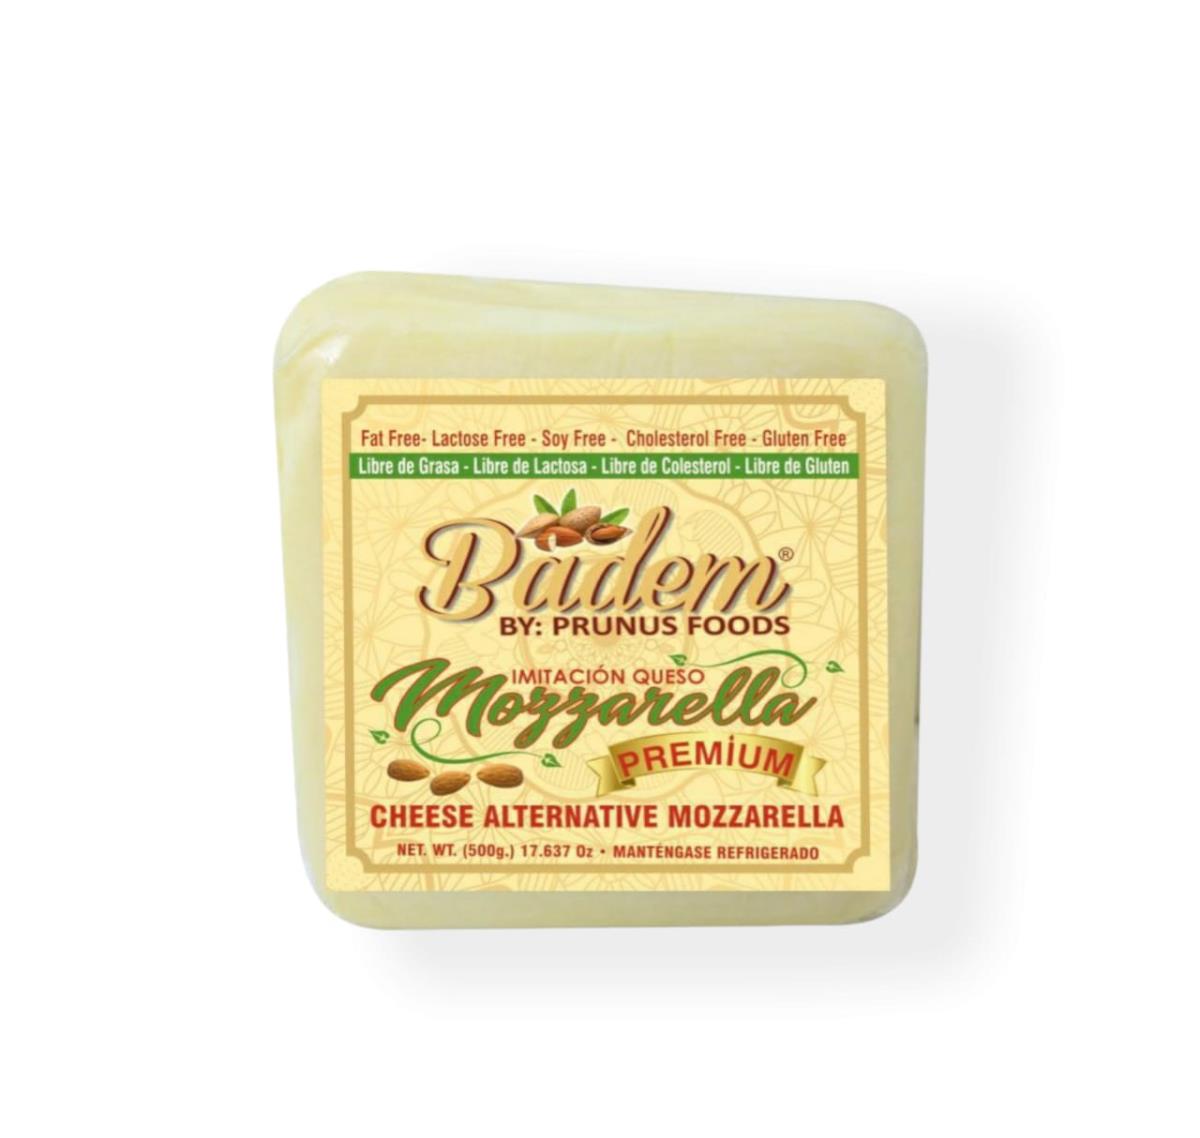 Macondo Mercado Saludable - Queso Mozzarella De Almendras Badem x 500 gr